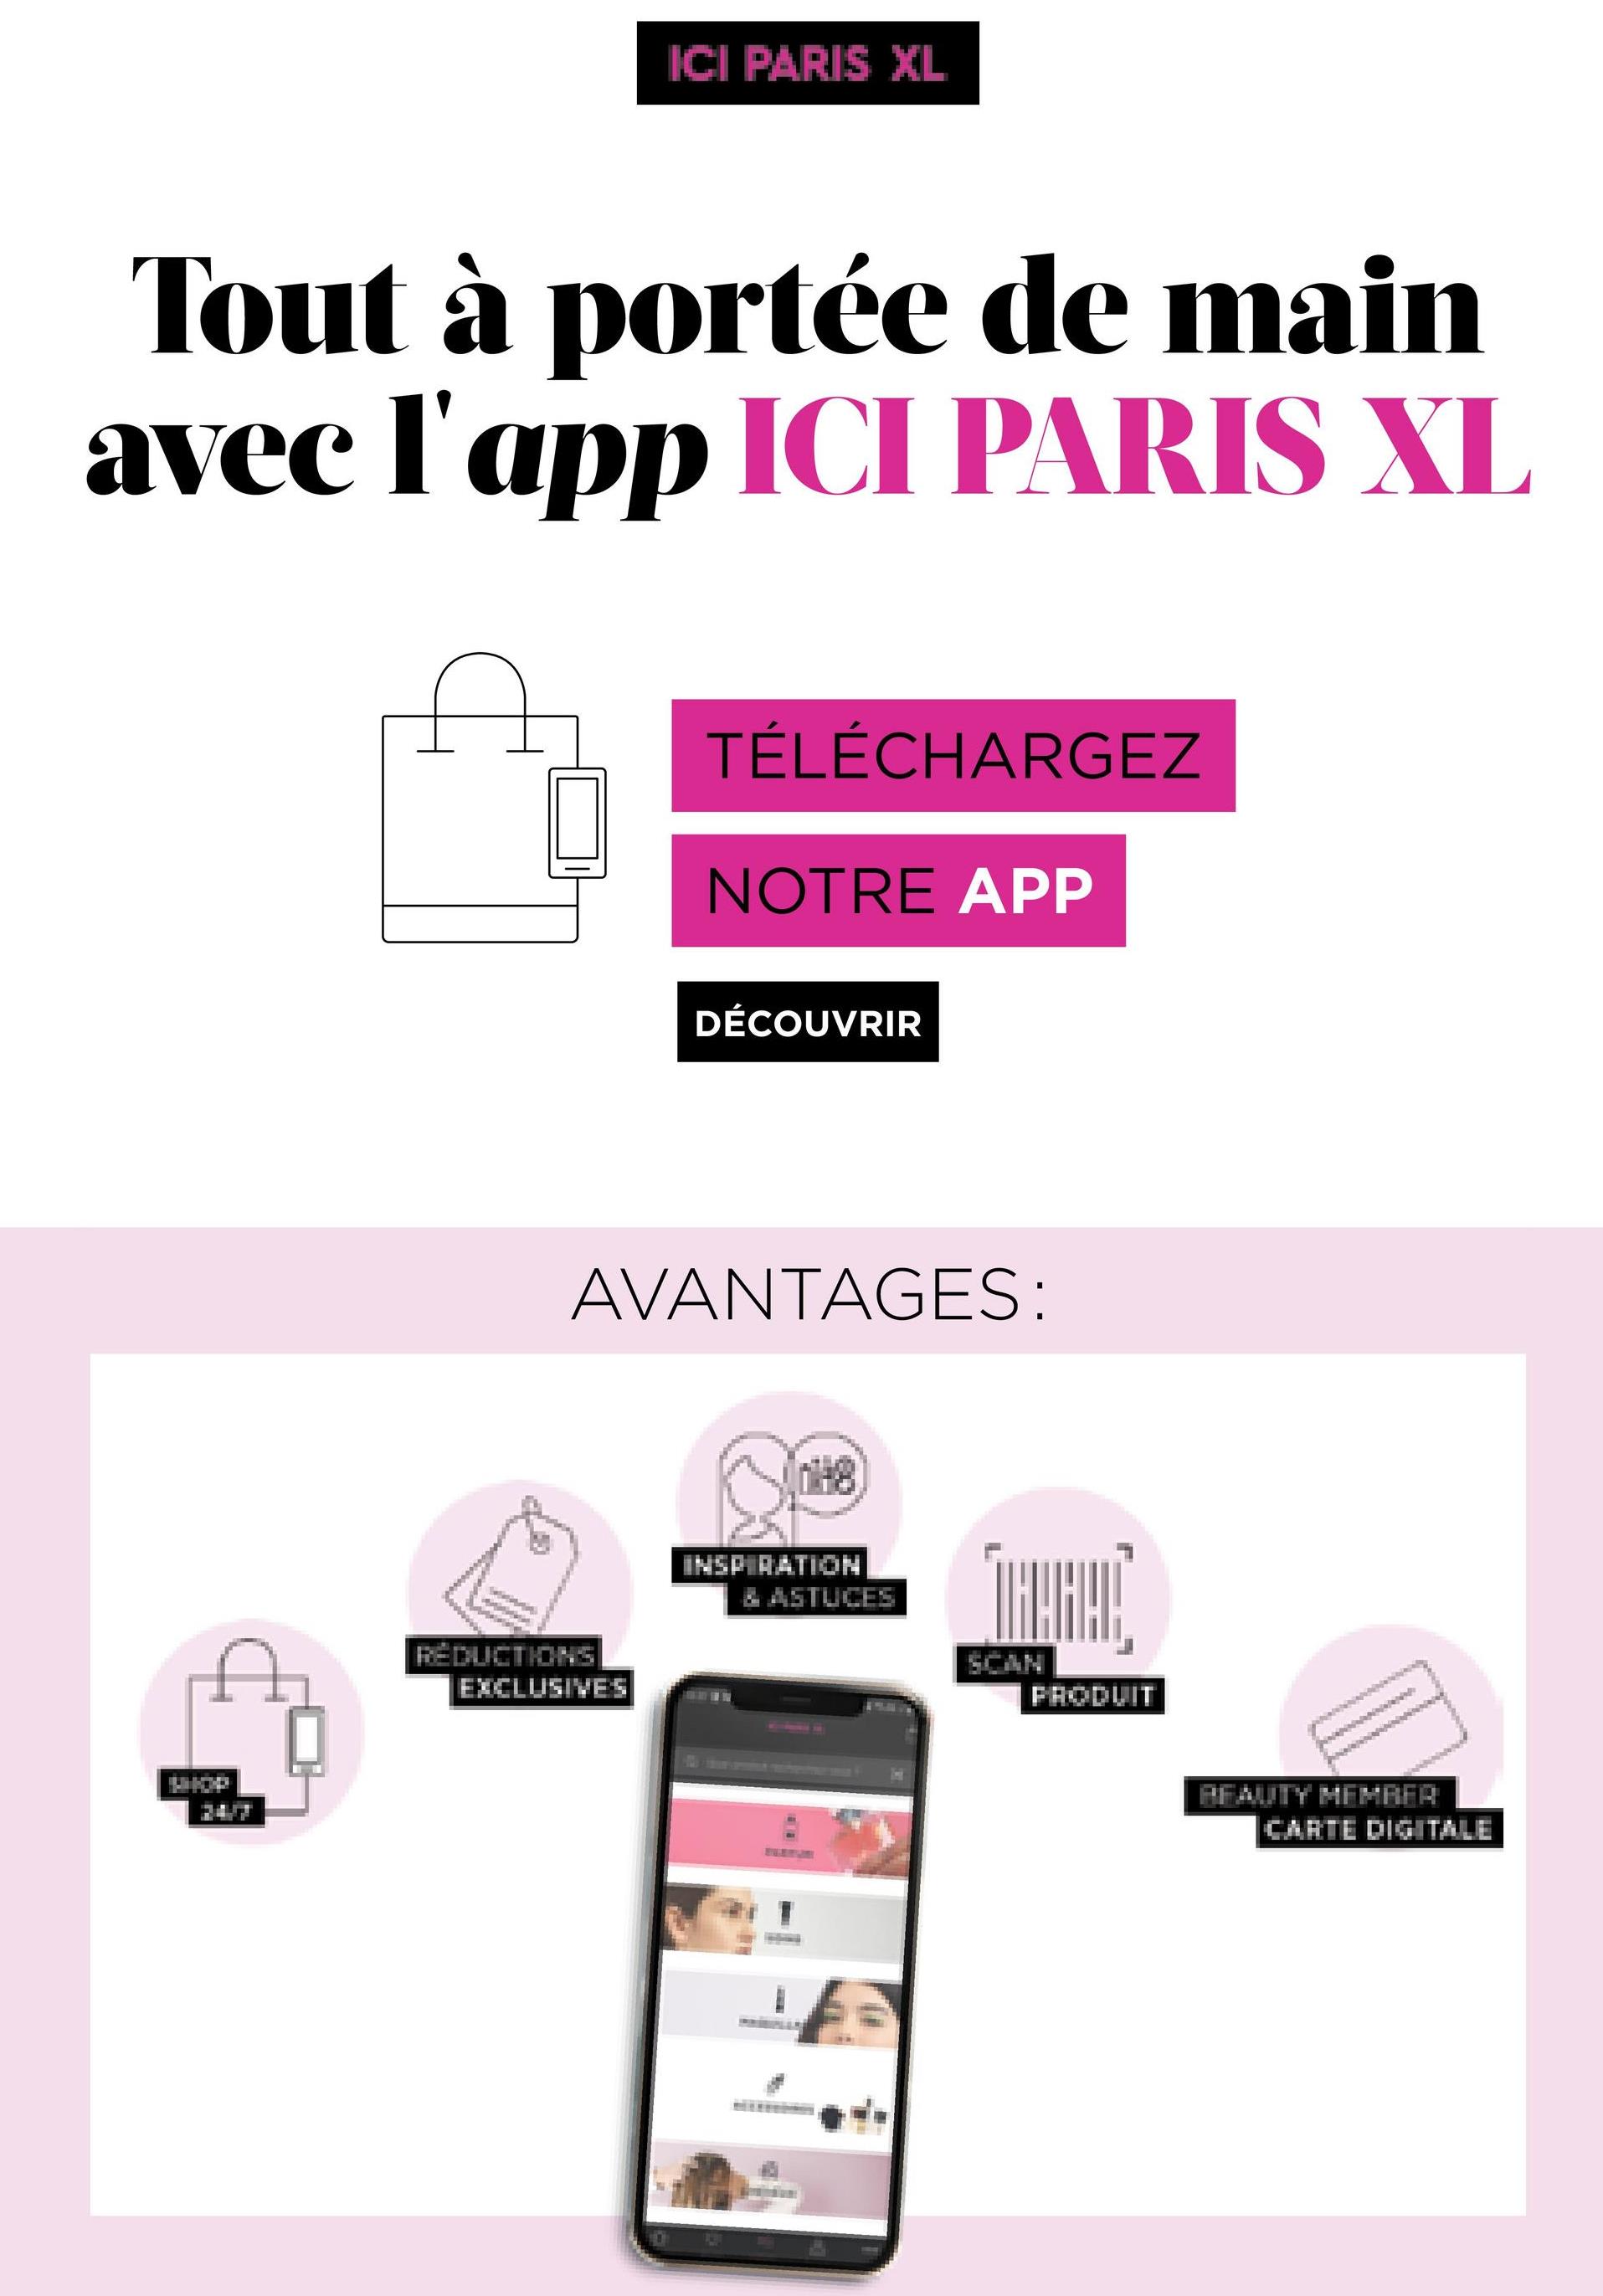 ICI PARIS XL
Tout à portée de main
avec l'app ICI PARIS XL
TÉLÉCHARGEZ
NOTRE APP
DÉCOUVRIR
AVANTAGES:
INSPIRATION
ZASTUCES
THEHE
REDUCTIONS
EXCLUSIVES
FRODUIT
PFAUTY MEHRER
CARTE DIGITALE
